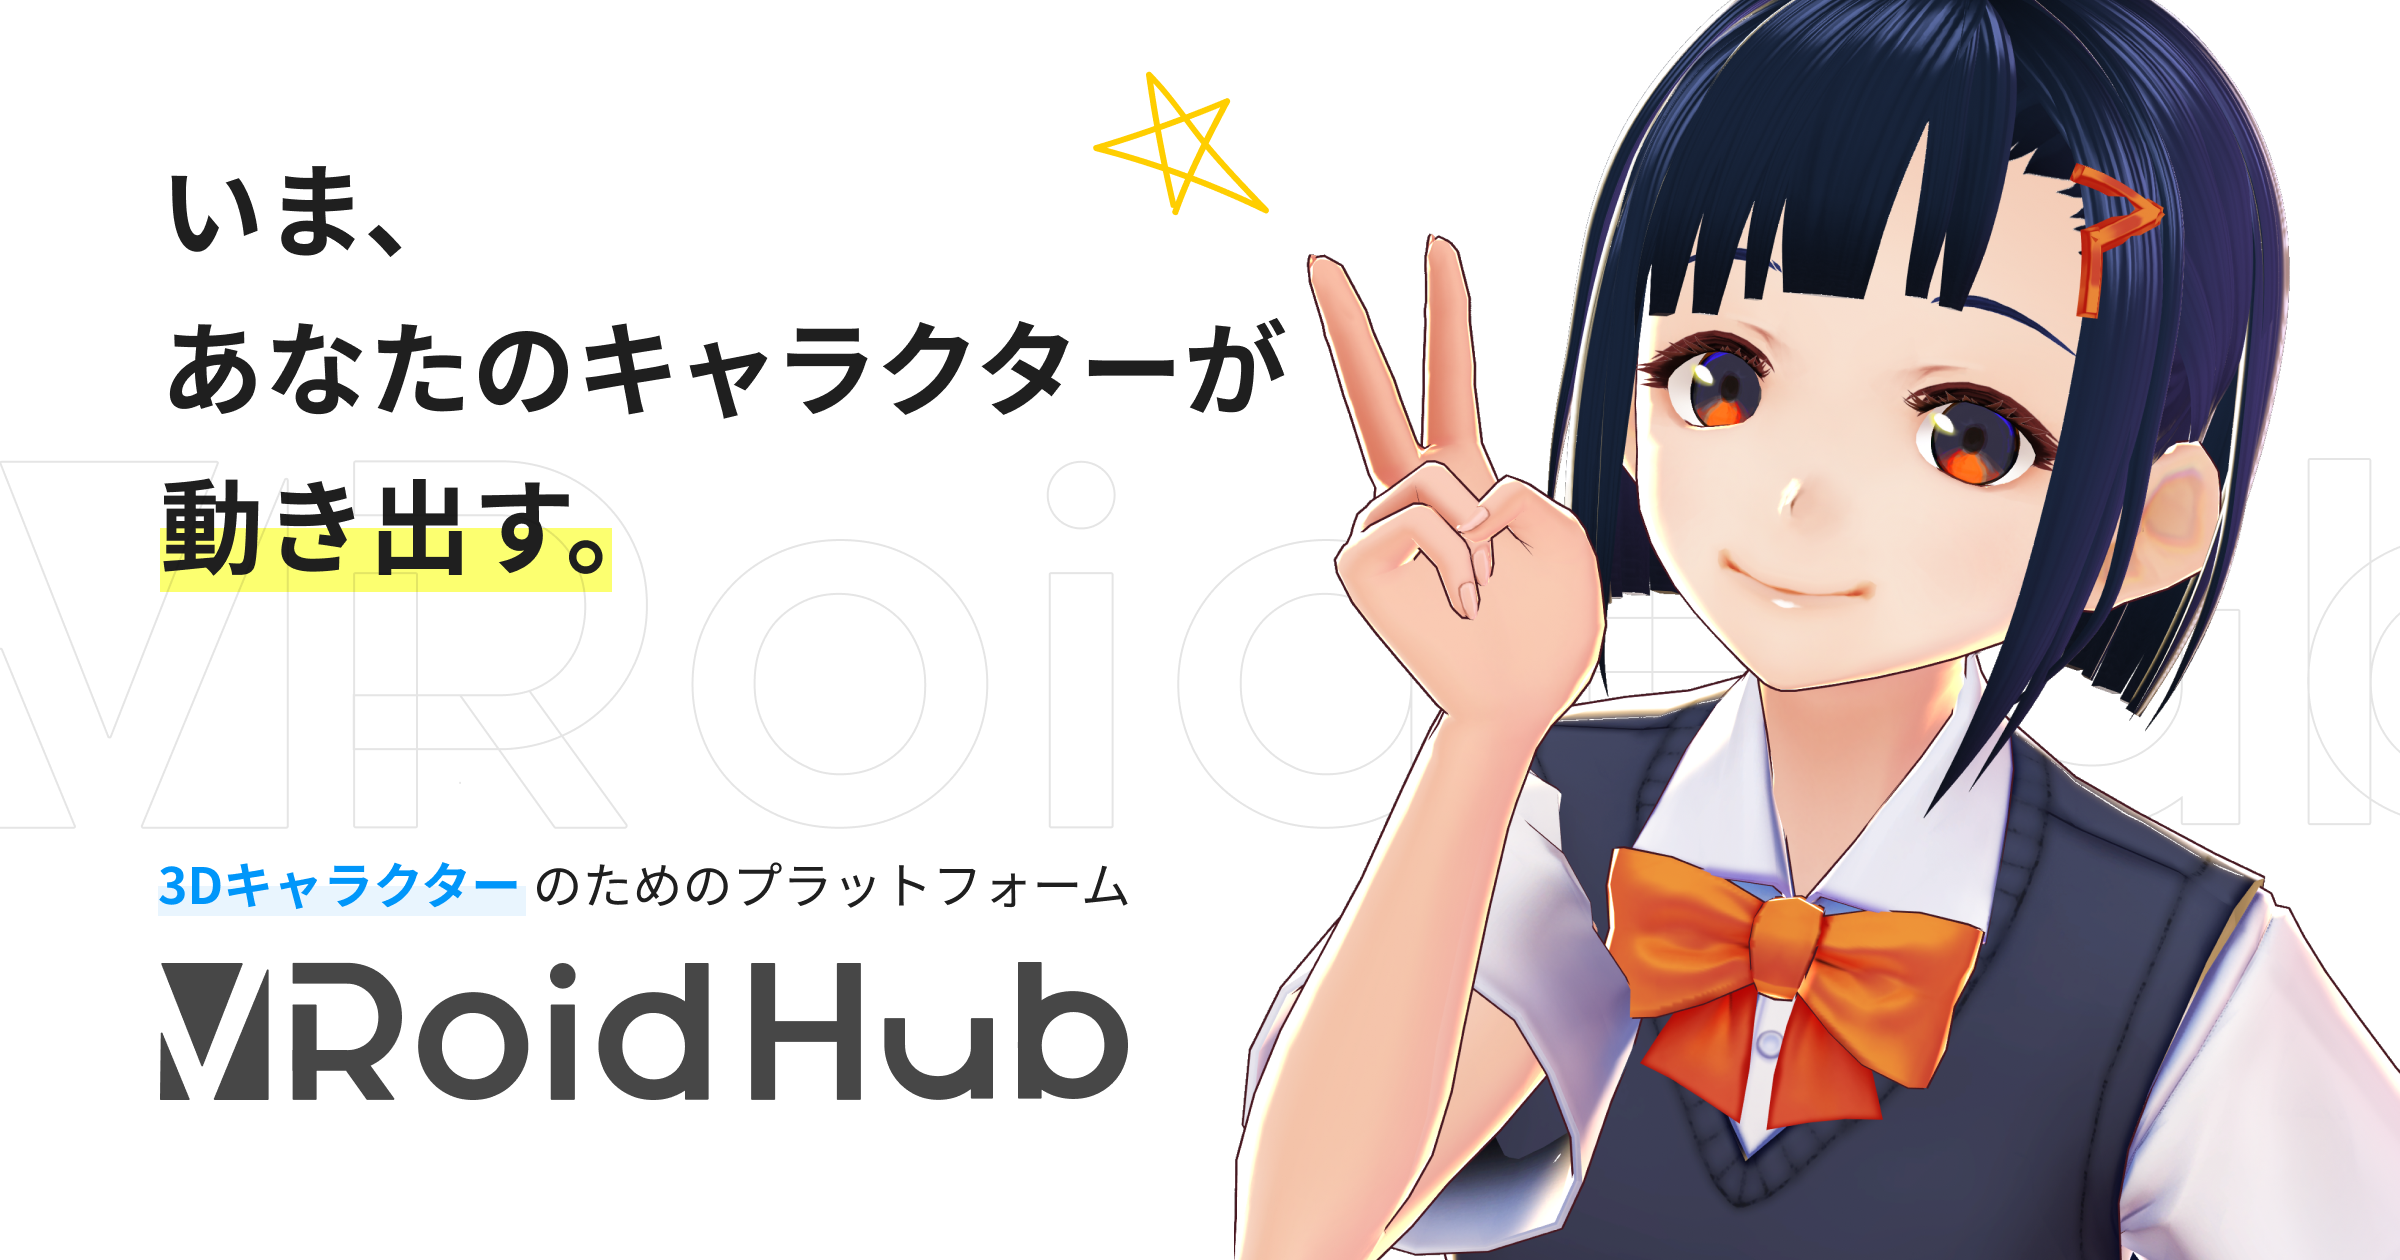 3dキャラクターモデルの投稿 共有プラットフォーム Vroid Hub 提供開始 ピクシブ株式会社のプレスリリース